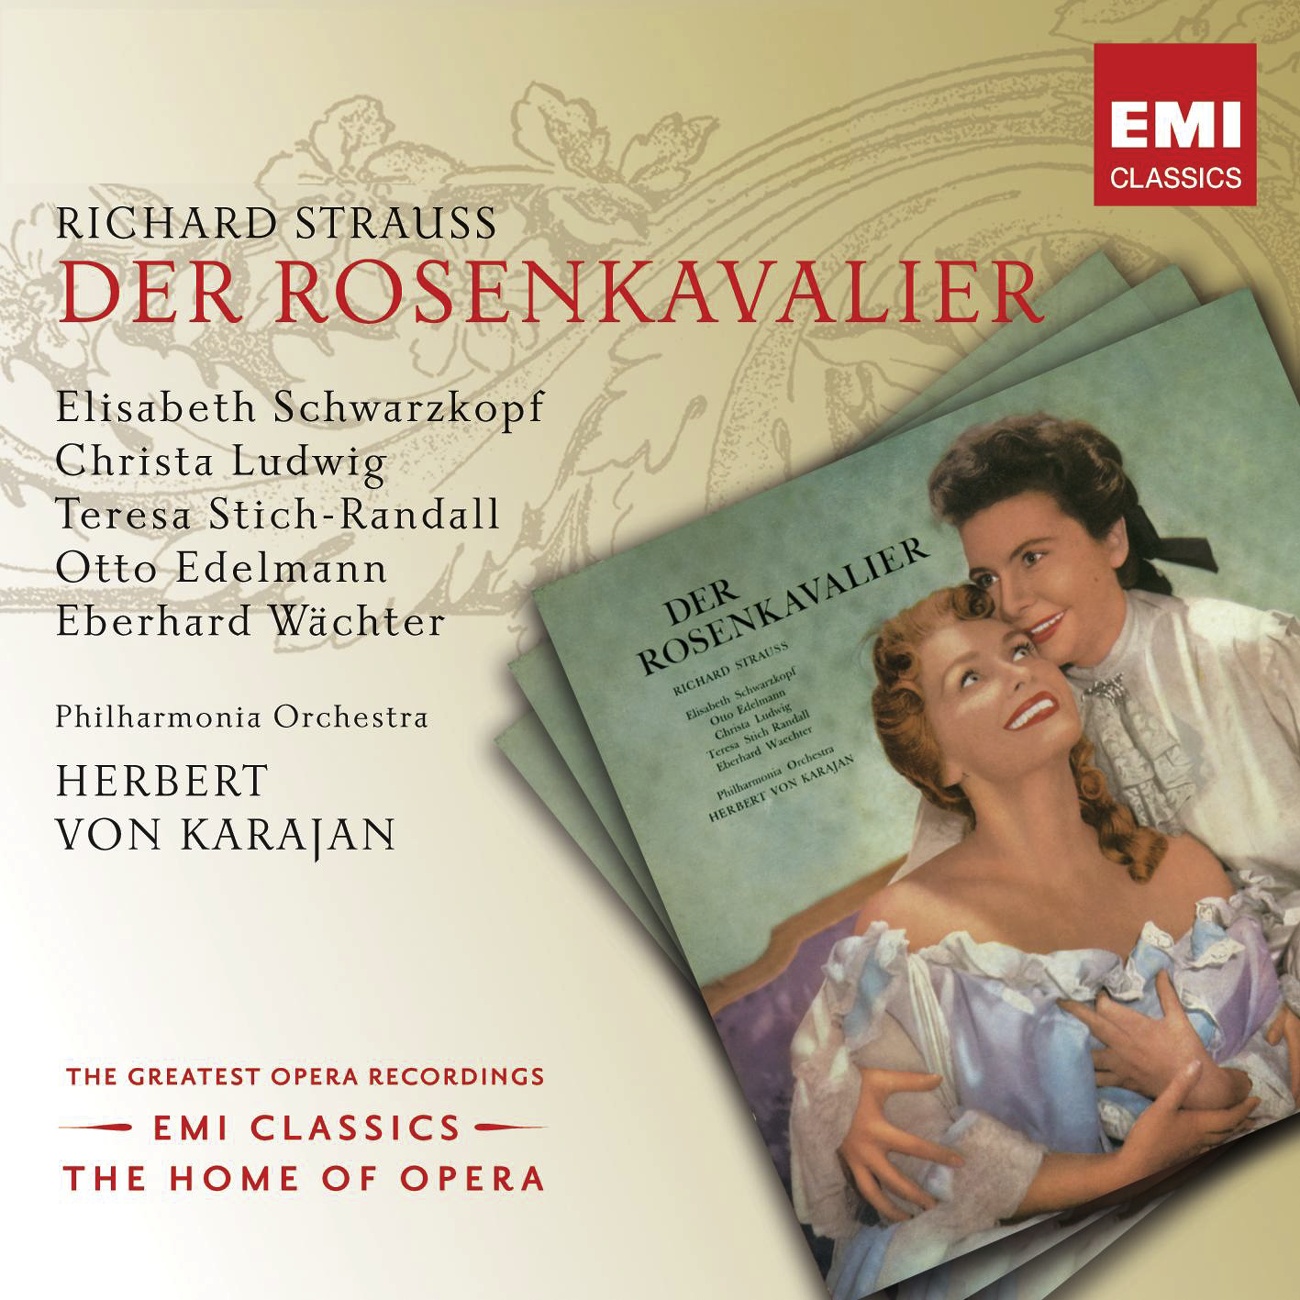 Der Rosenkavalier (2001 Digital Remaster), Act II: Belieben jetzt vielleicht...ist ein alter Tokaier (Sophie/Faninal/Ochs/Octavian/Marianne)